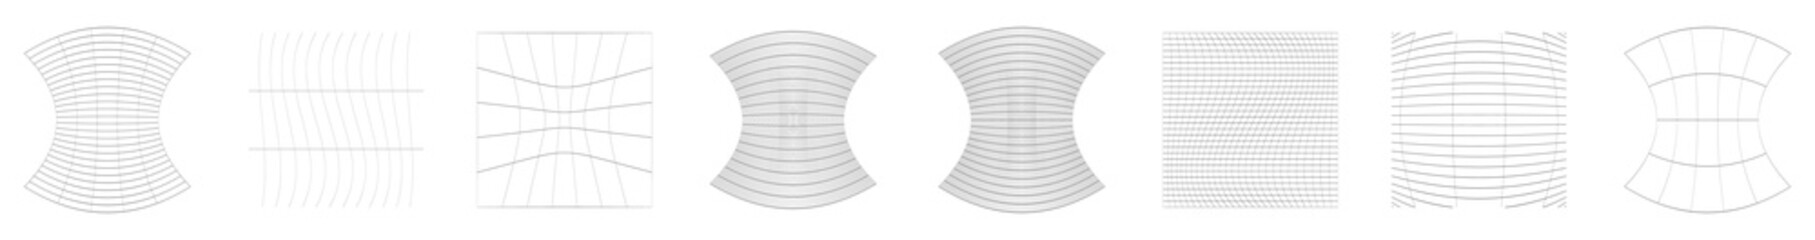 Grid, mesh, grating, trellis, wireframe with distortion, deformation effect. Warp, tweak distort grid